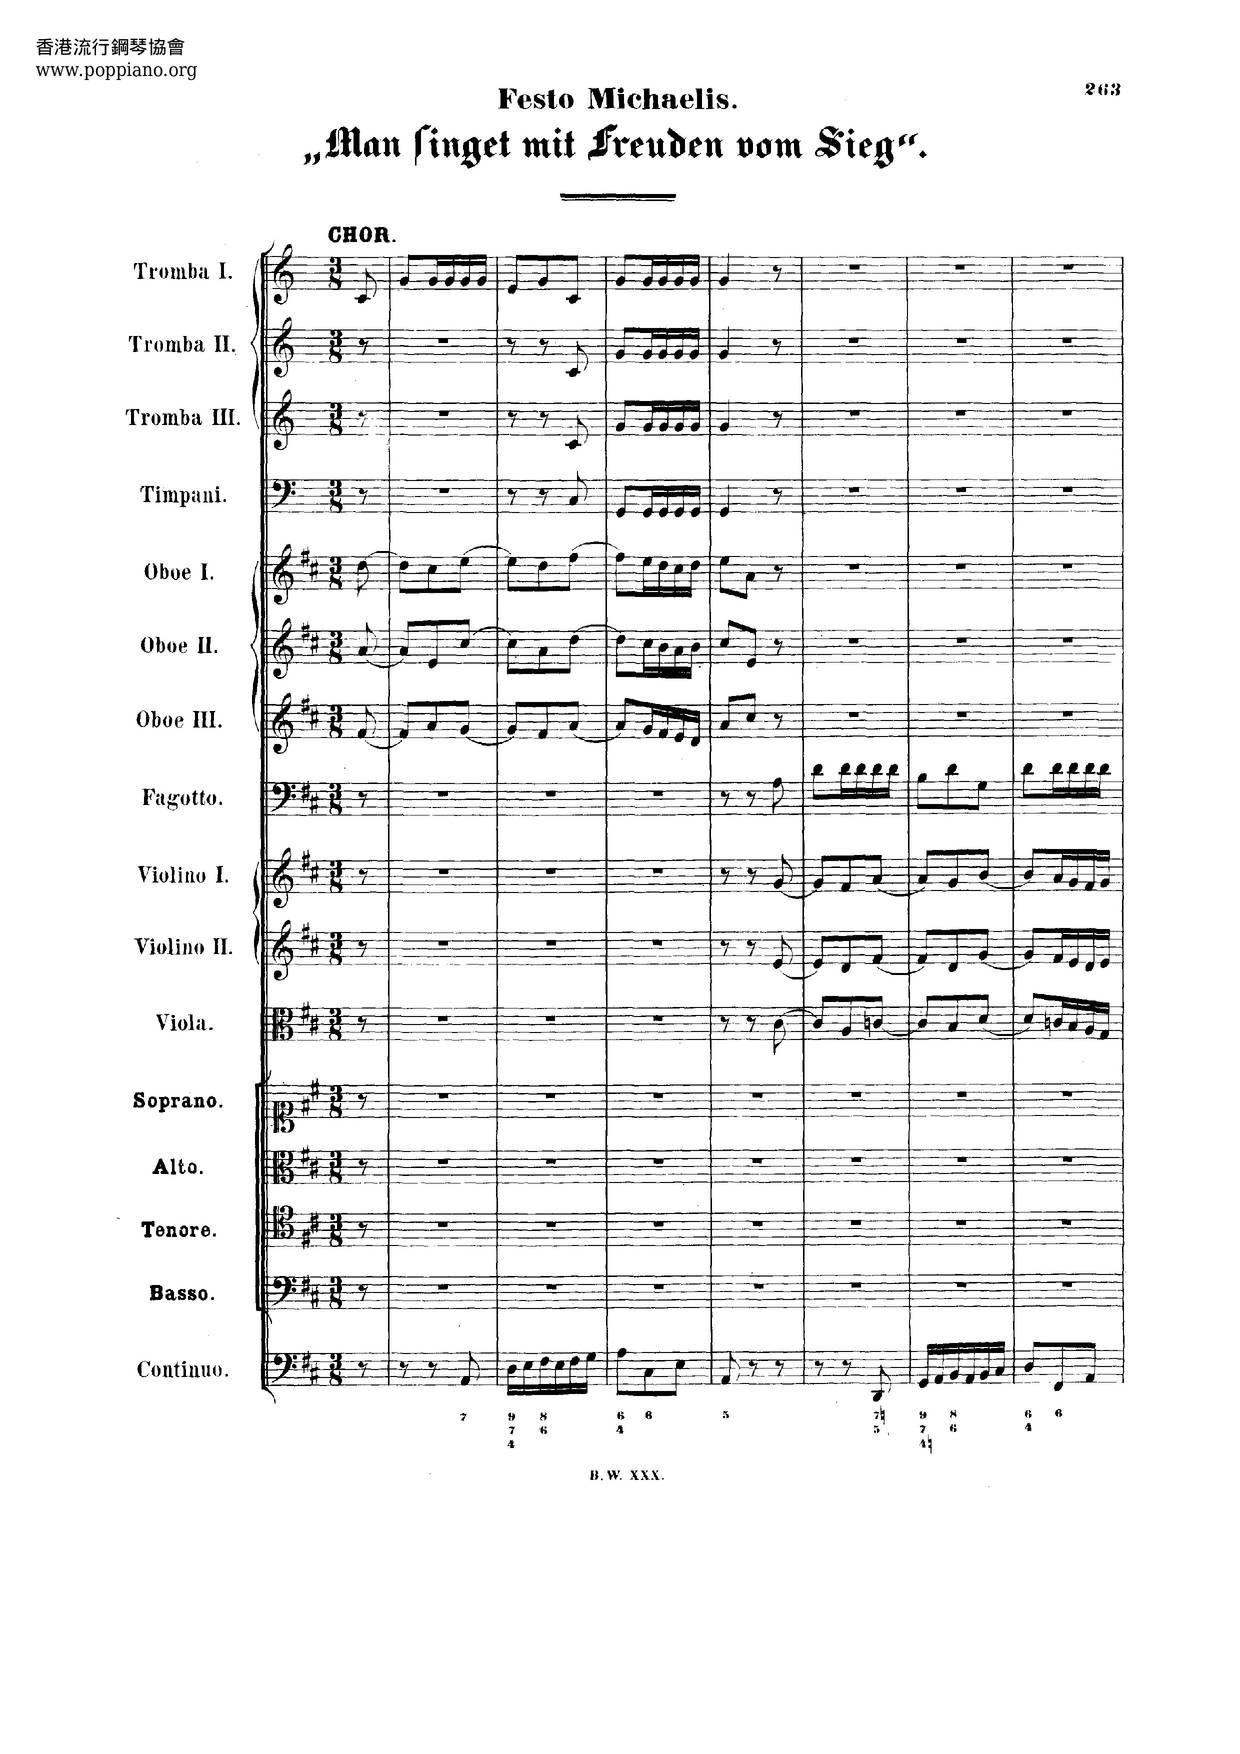 Man Singet Mit Freuden Vom Sieg, BWV 149 Score